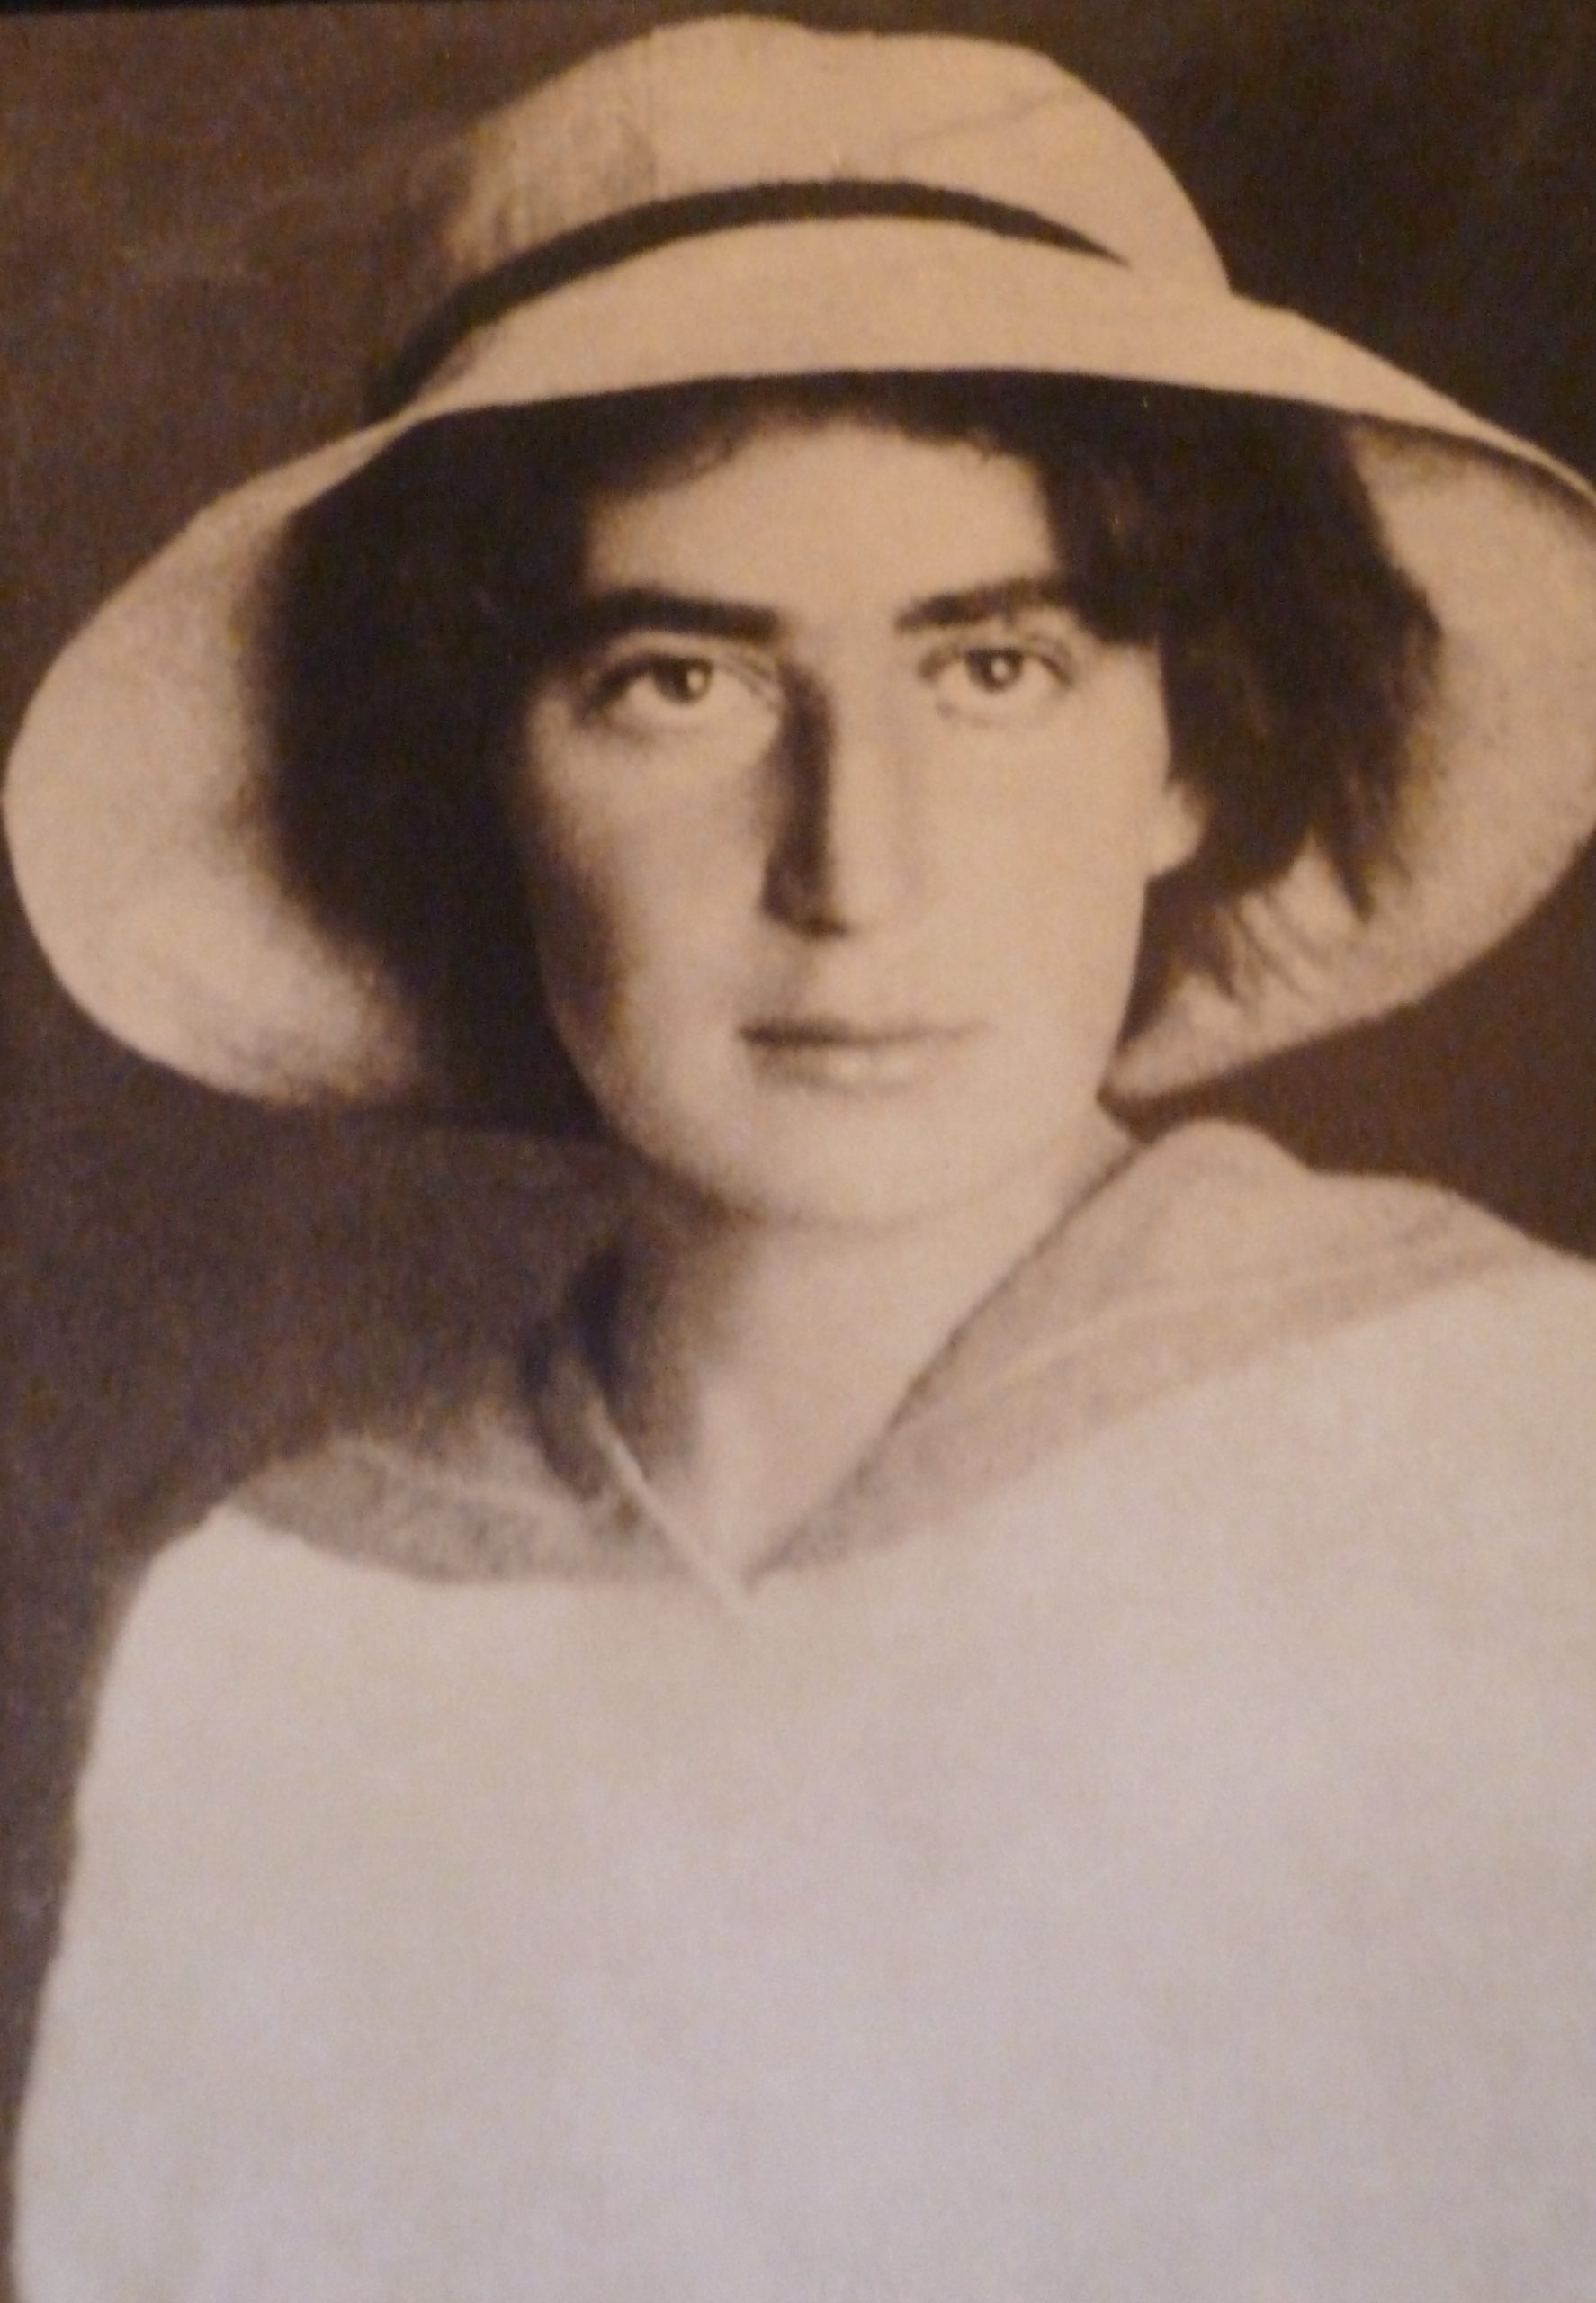 Rachel Bluwstein, 1890-1931